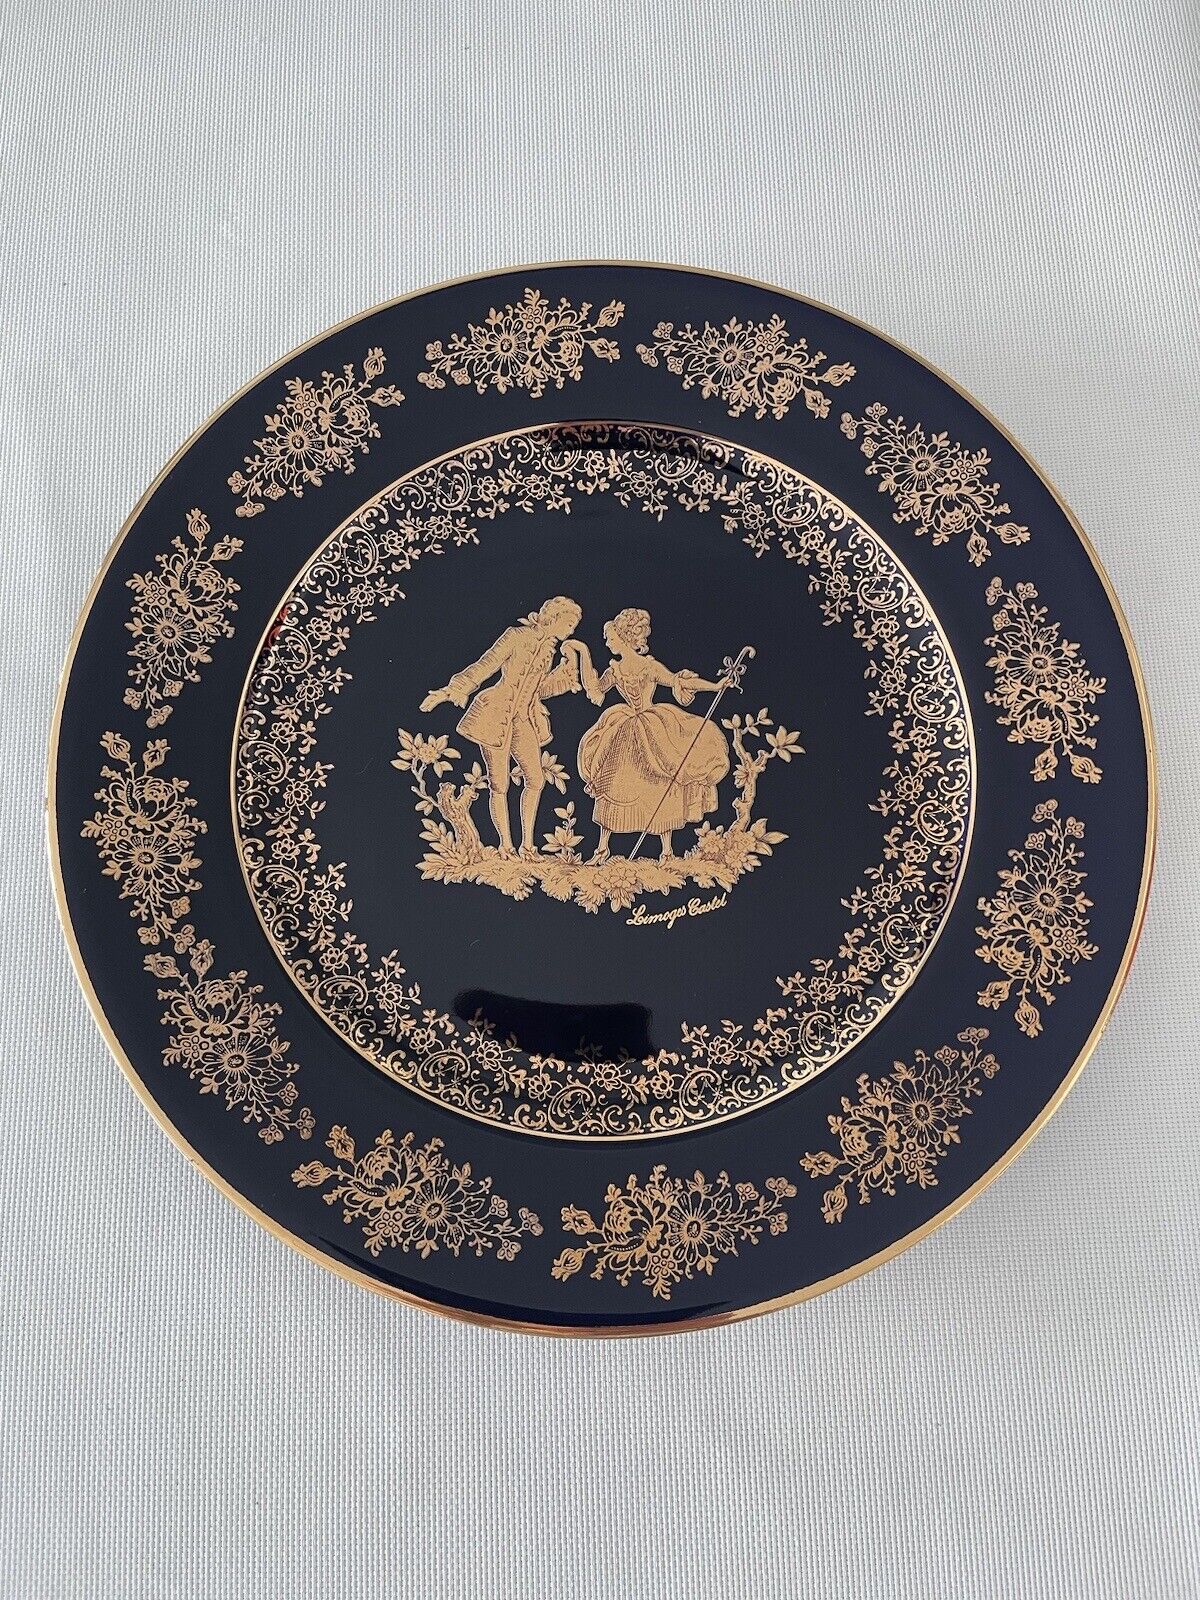 RARE VINTAGE Limoges WEDDING Couple Porcelain Plate Signed 22K Gold/Blue